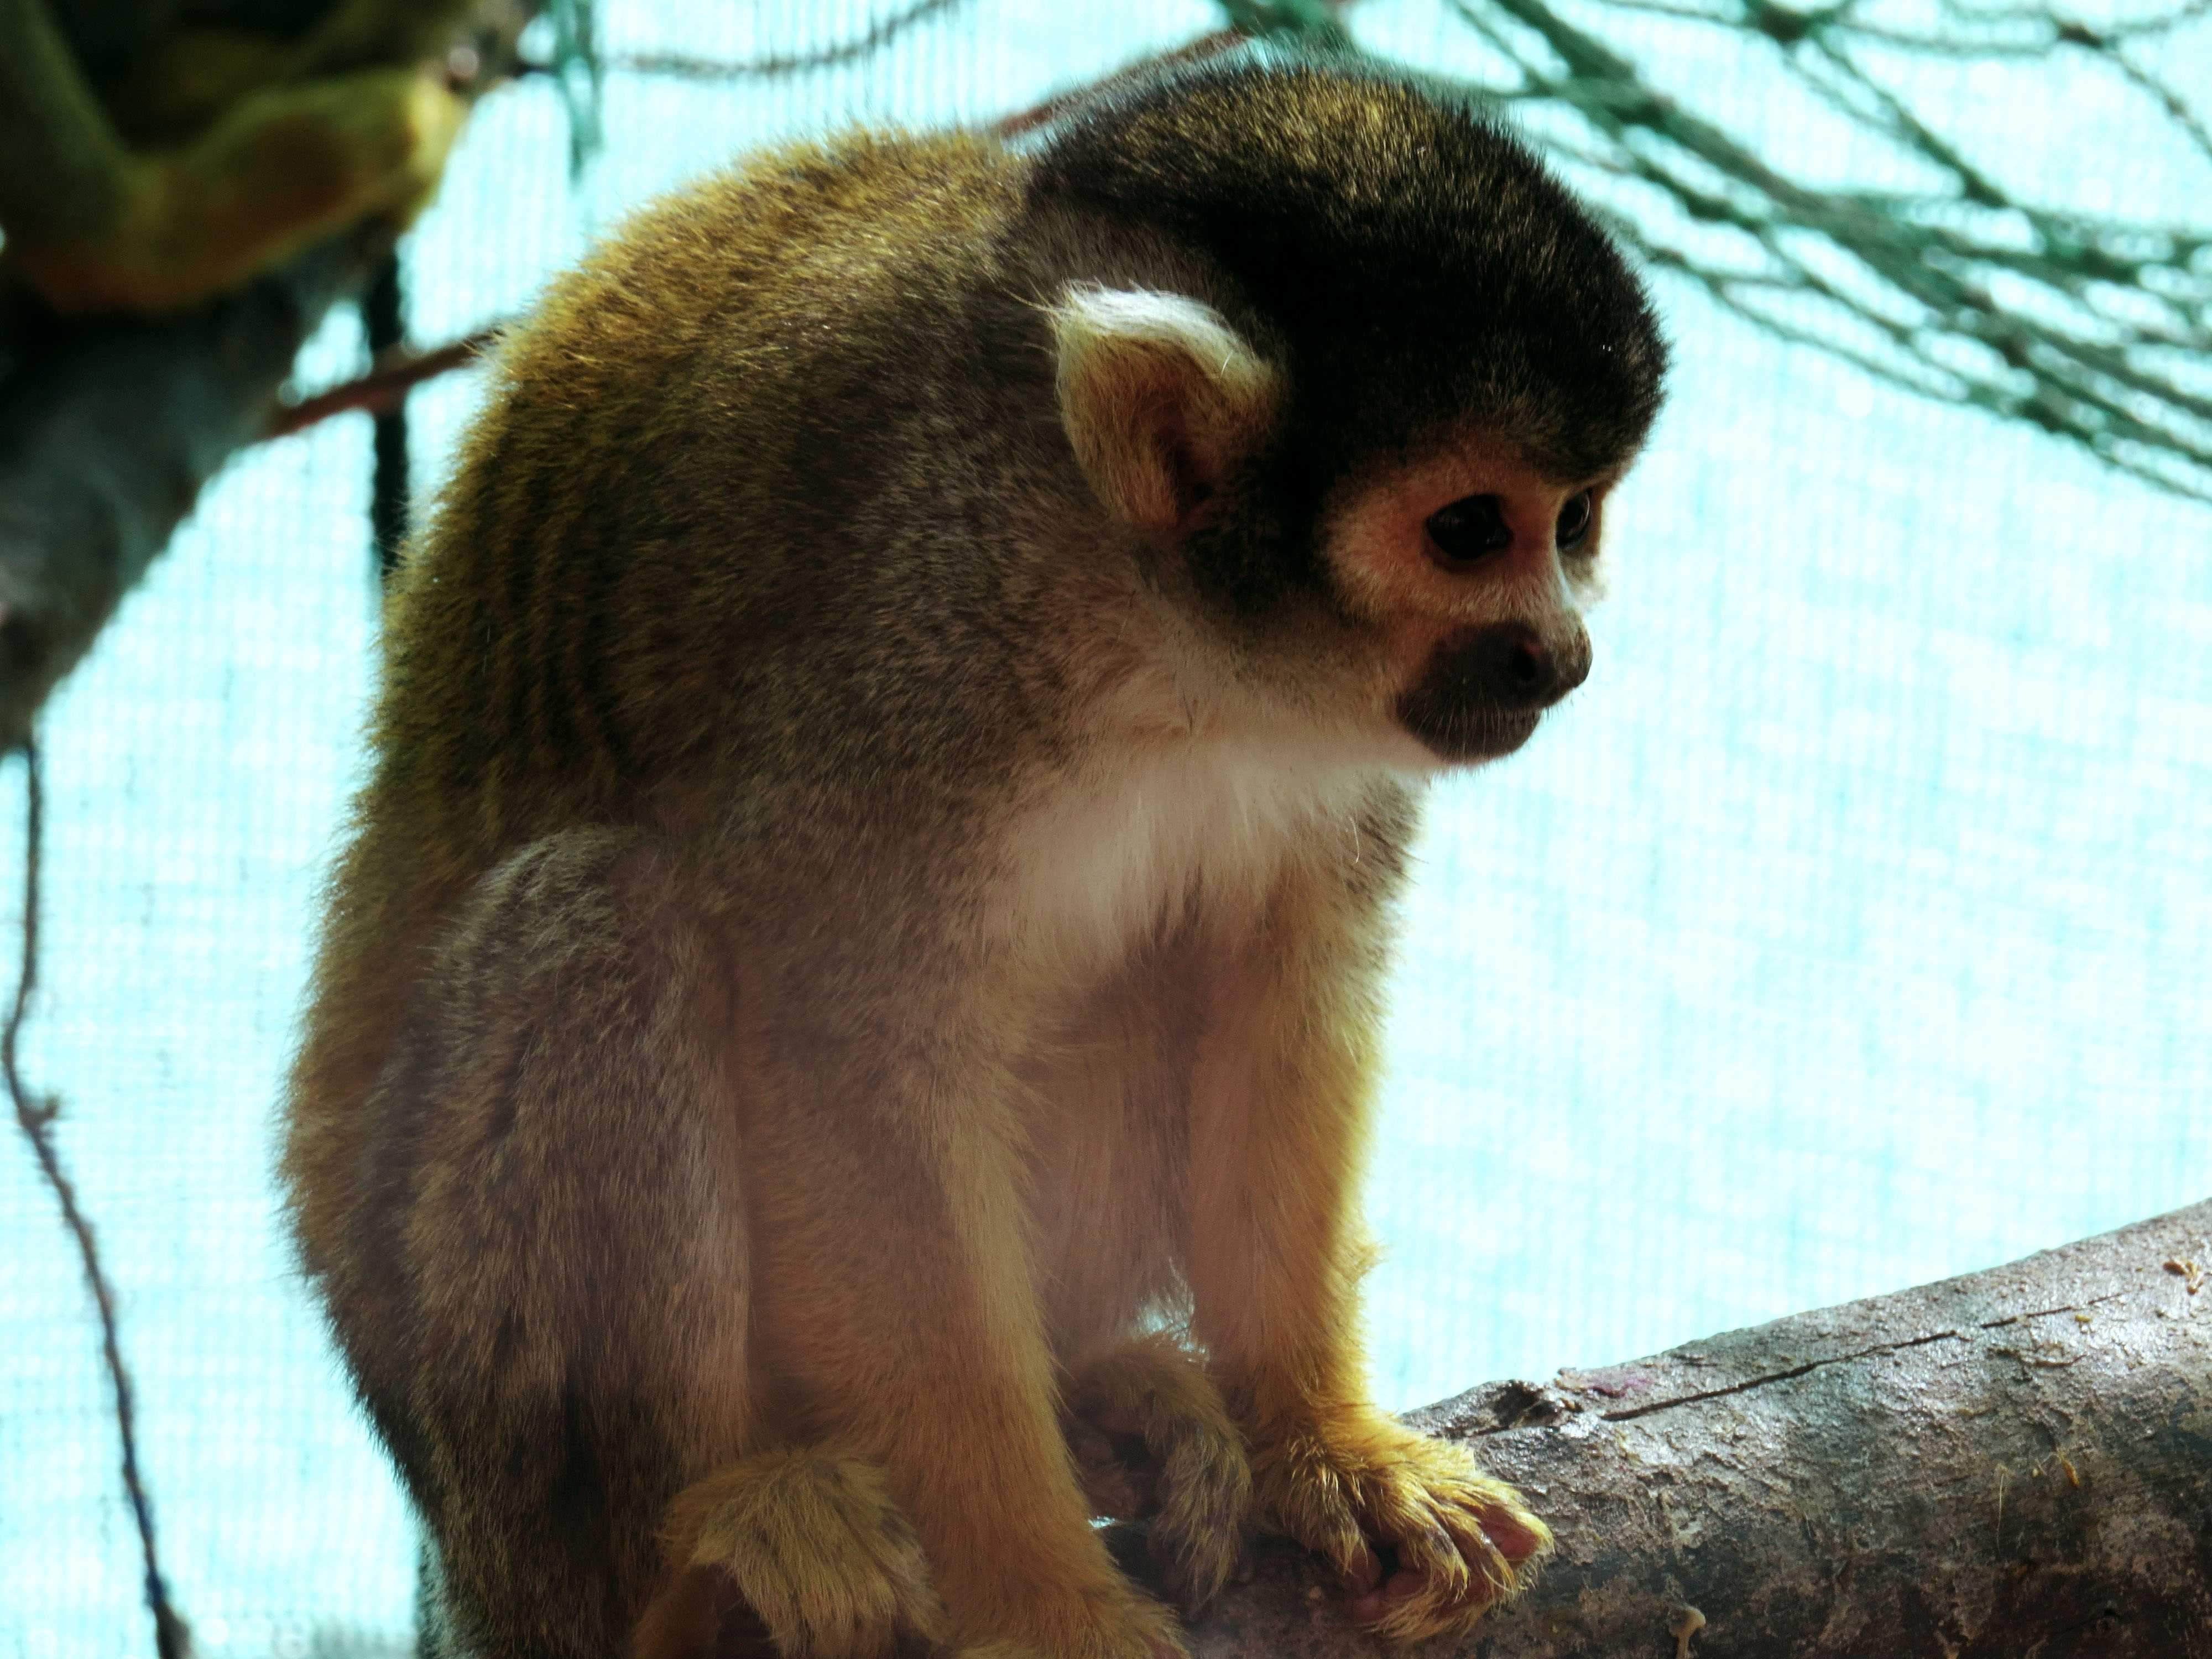 Small monkey. Голоухий саймири. Приматы саймири. Саймири обезьяна. Саймири в зоопарке.